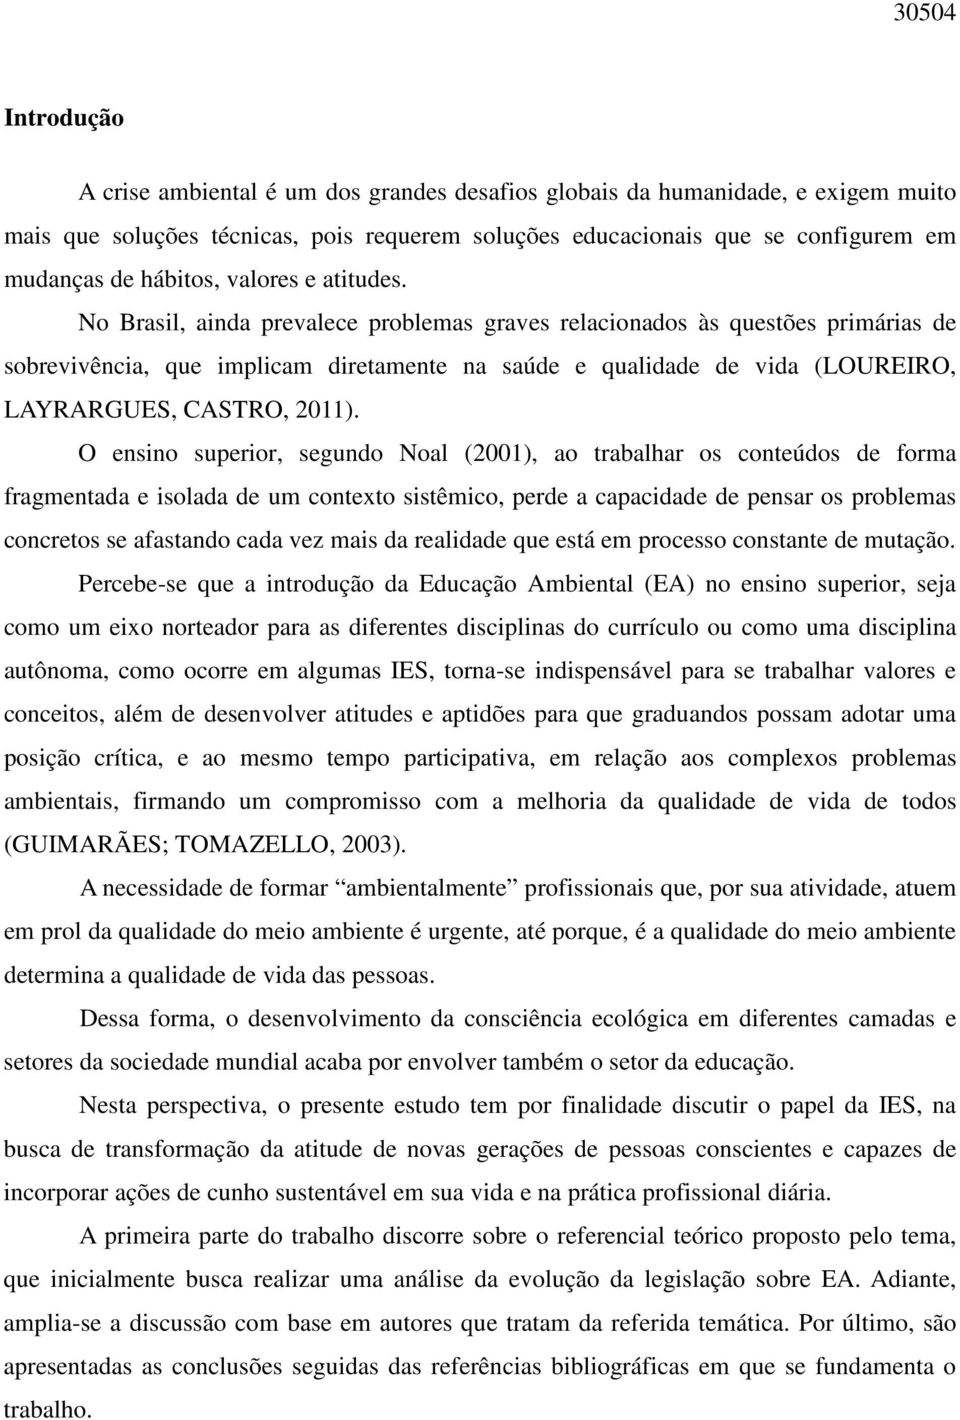 No Brasil, ainda prevalece problemas graves relacionados às questões primárias de sobrevivência, que implicam diretamente na saúde e qualidade de vida (LOUREIRO, LAYRARGUES, CASTRO, 2011).